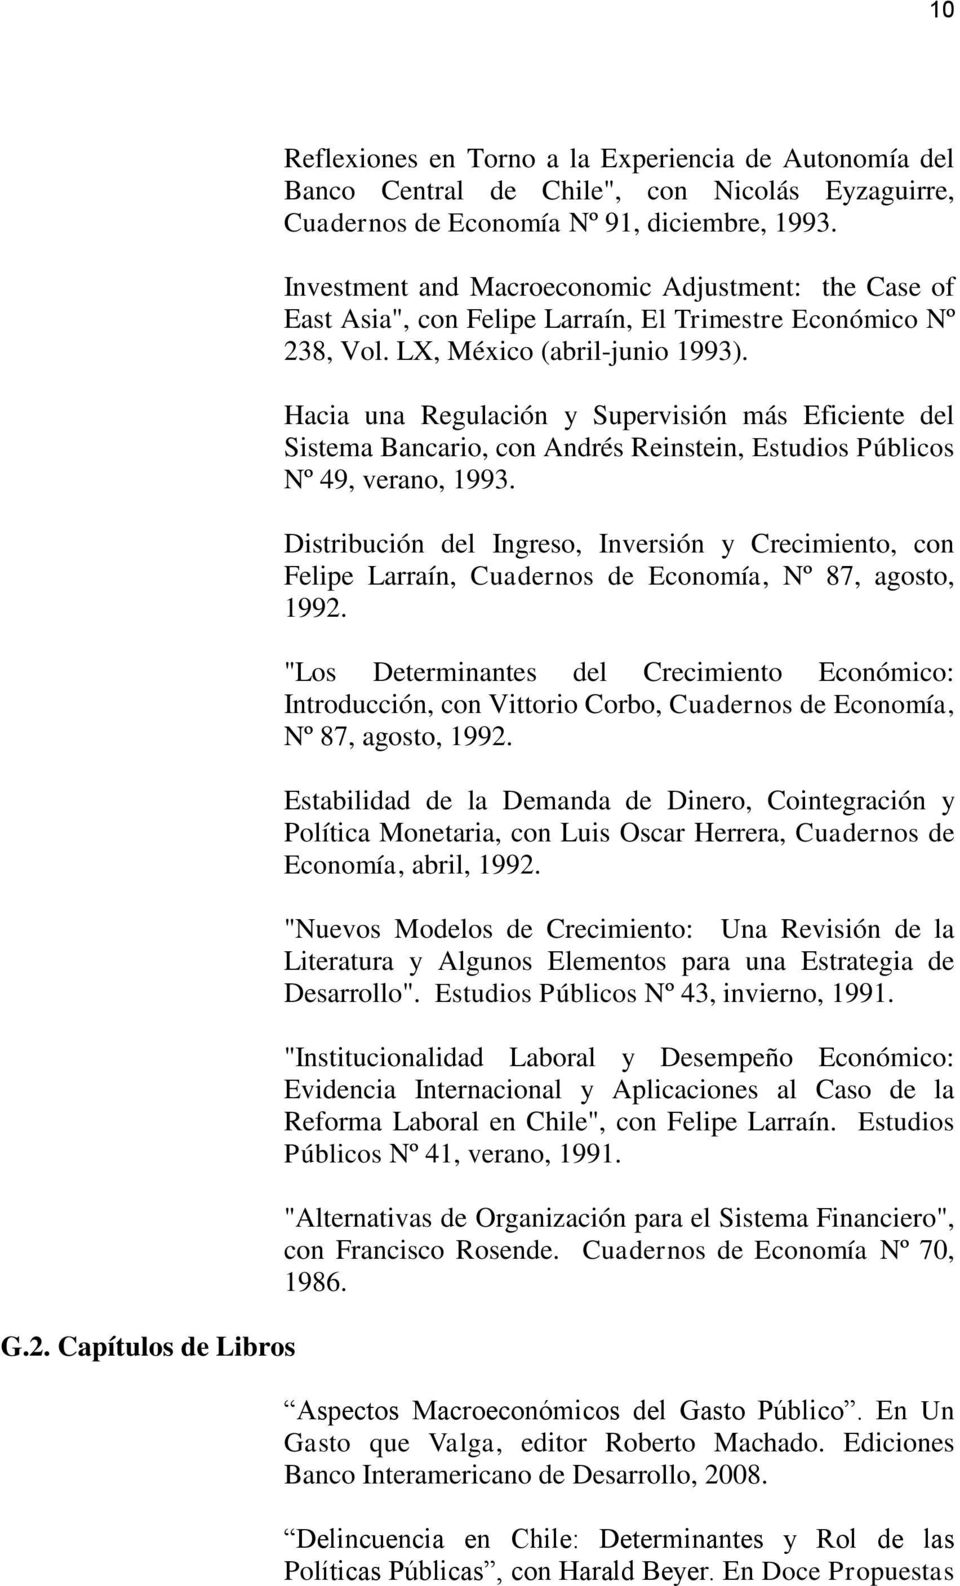 Hacia una Regulación y Supervisión más Eficiente del Sistema Bancario, con Andrés Reinstein, Estudios Públicos Nº 49, verano, 1993.